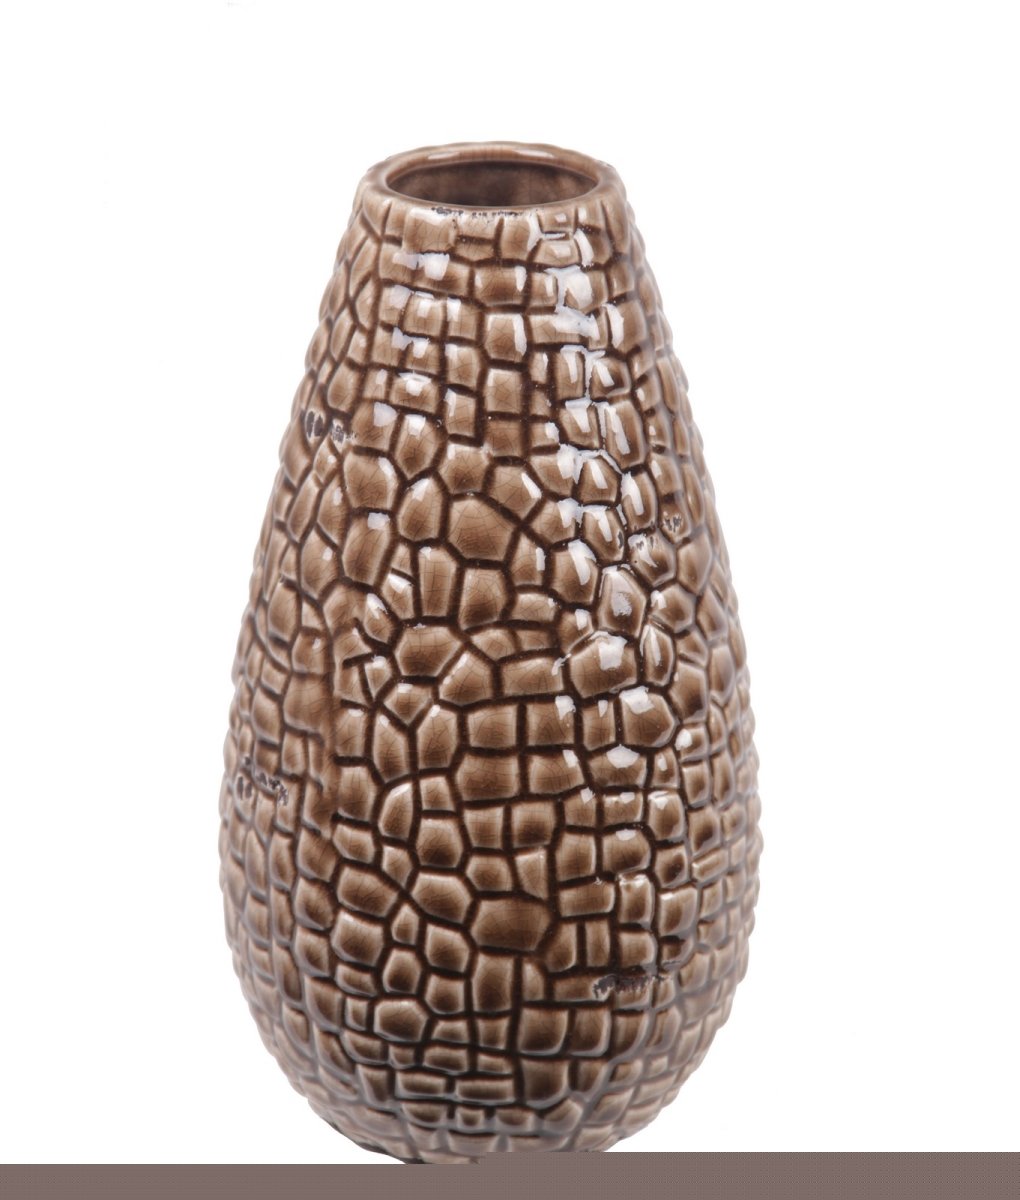 84035 6.5 X 6.5 X 11.5 In. Ceramic Vase